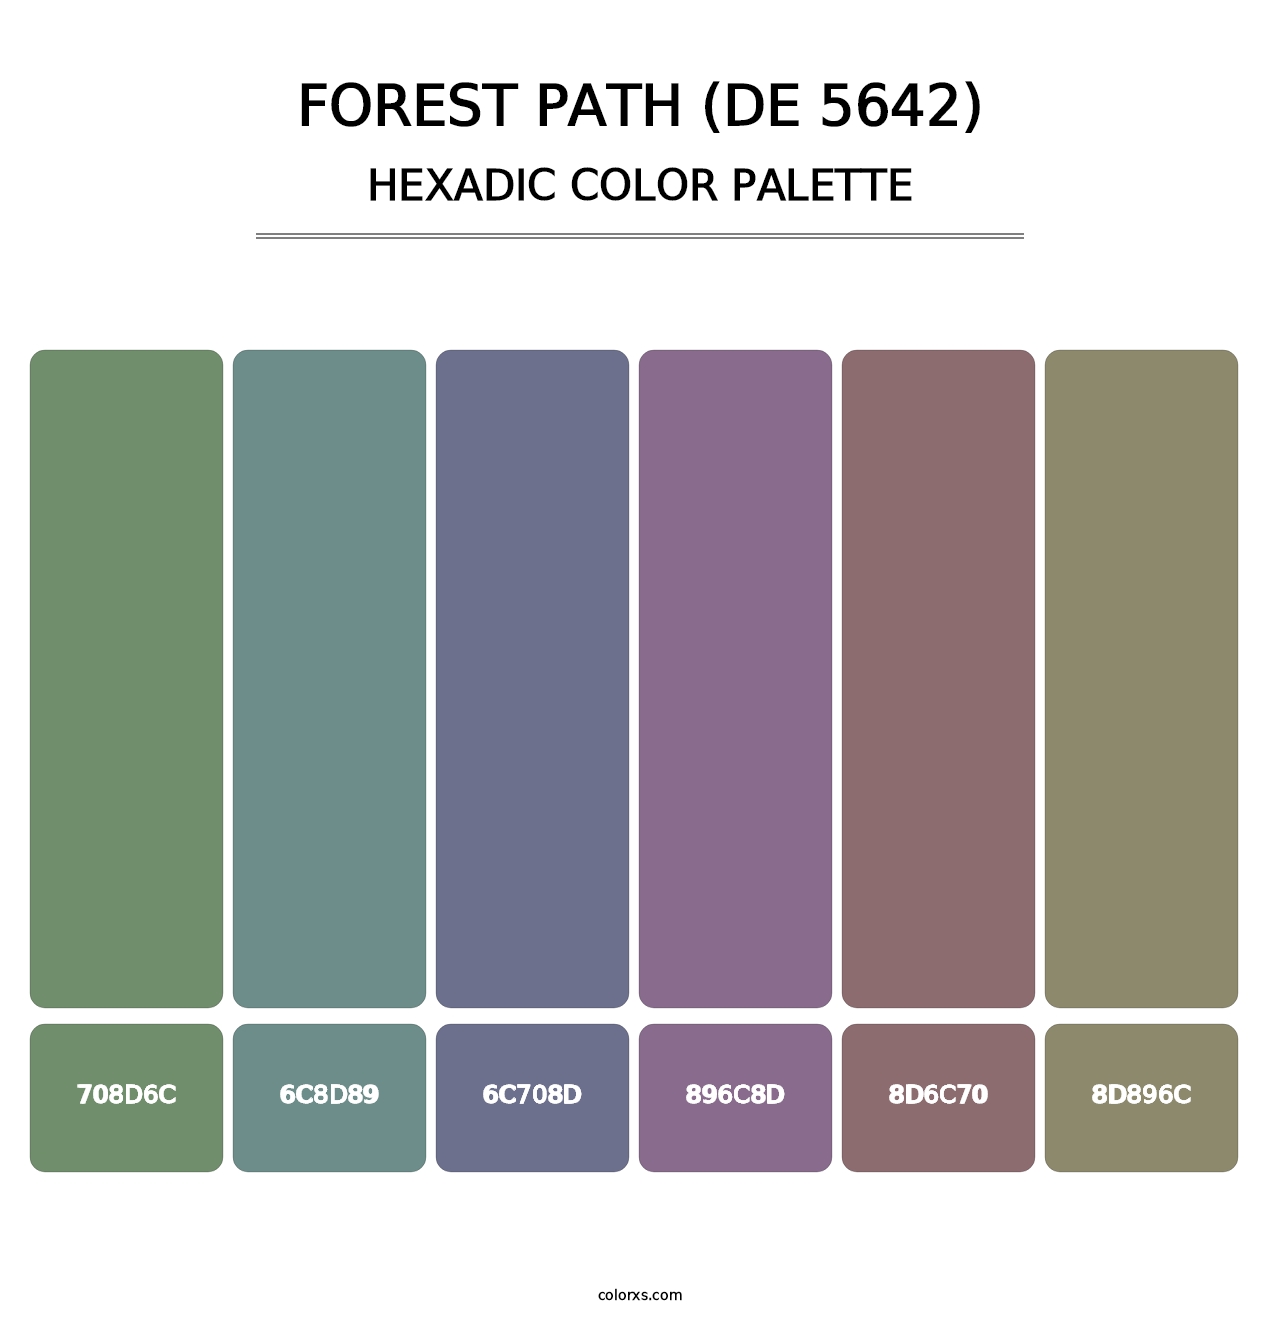 Forest Path (DE 5642) - Hexadic Color Palette